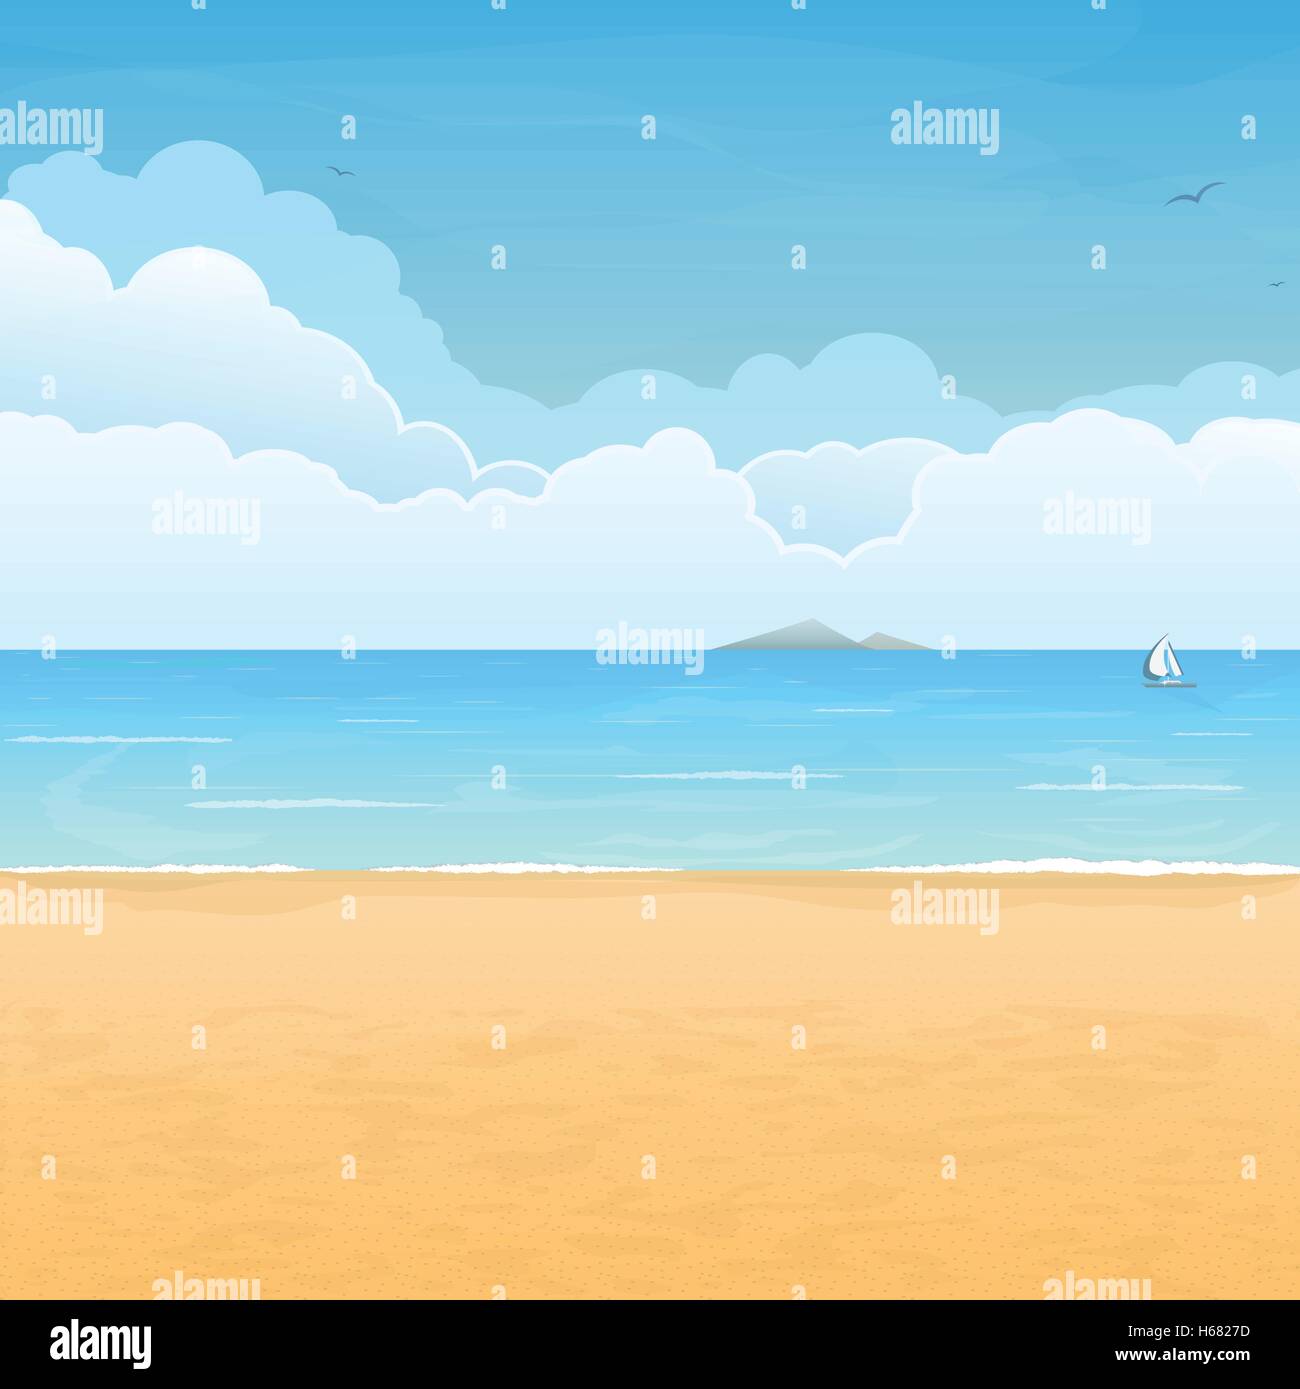 La plage de sable tropicale, bateau en mer, l'île de montagne à l'horizon et les nuages sur l'arrière-plan Illustration de Vecteur